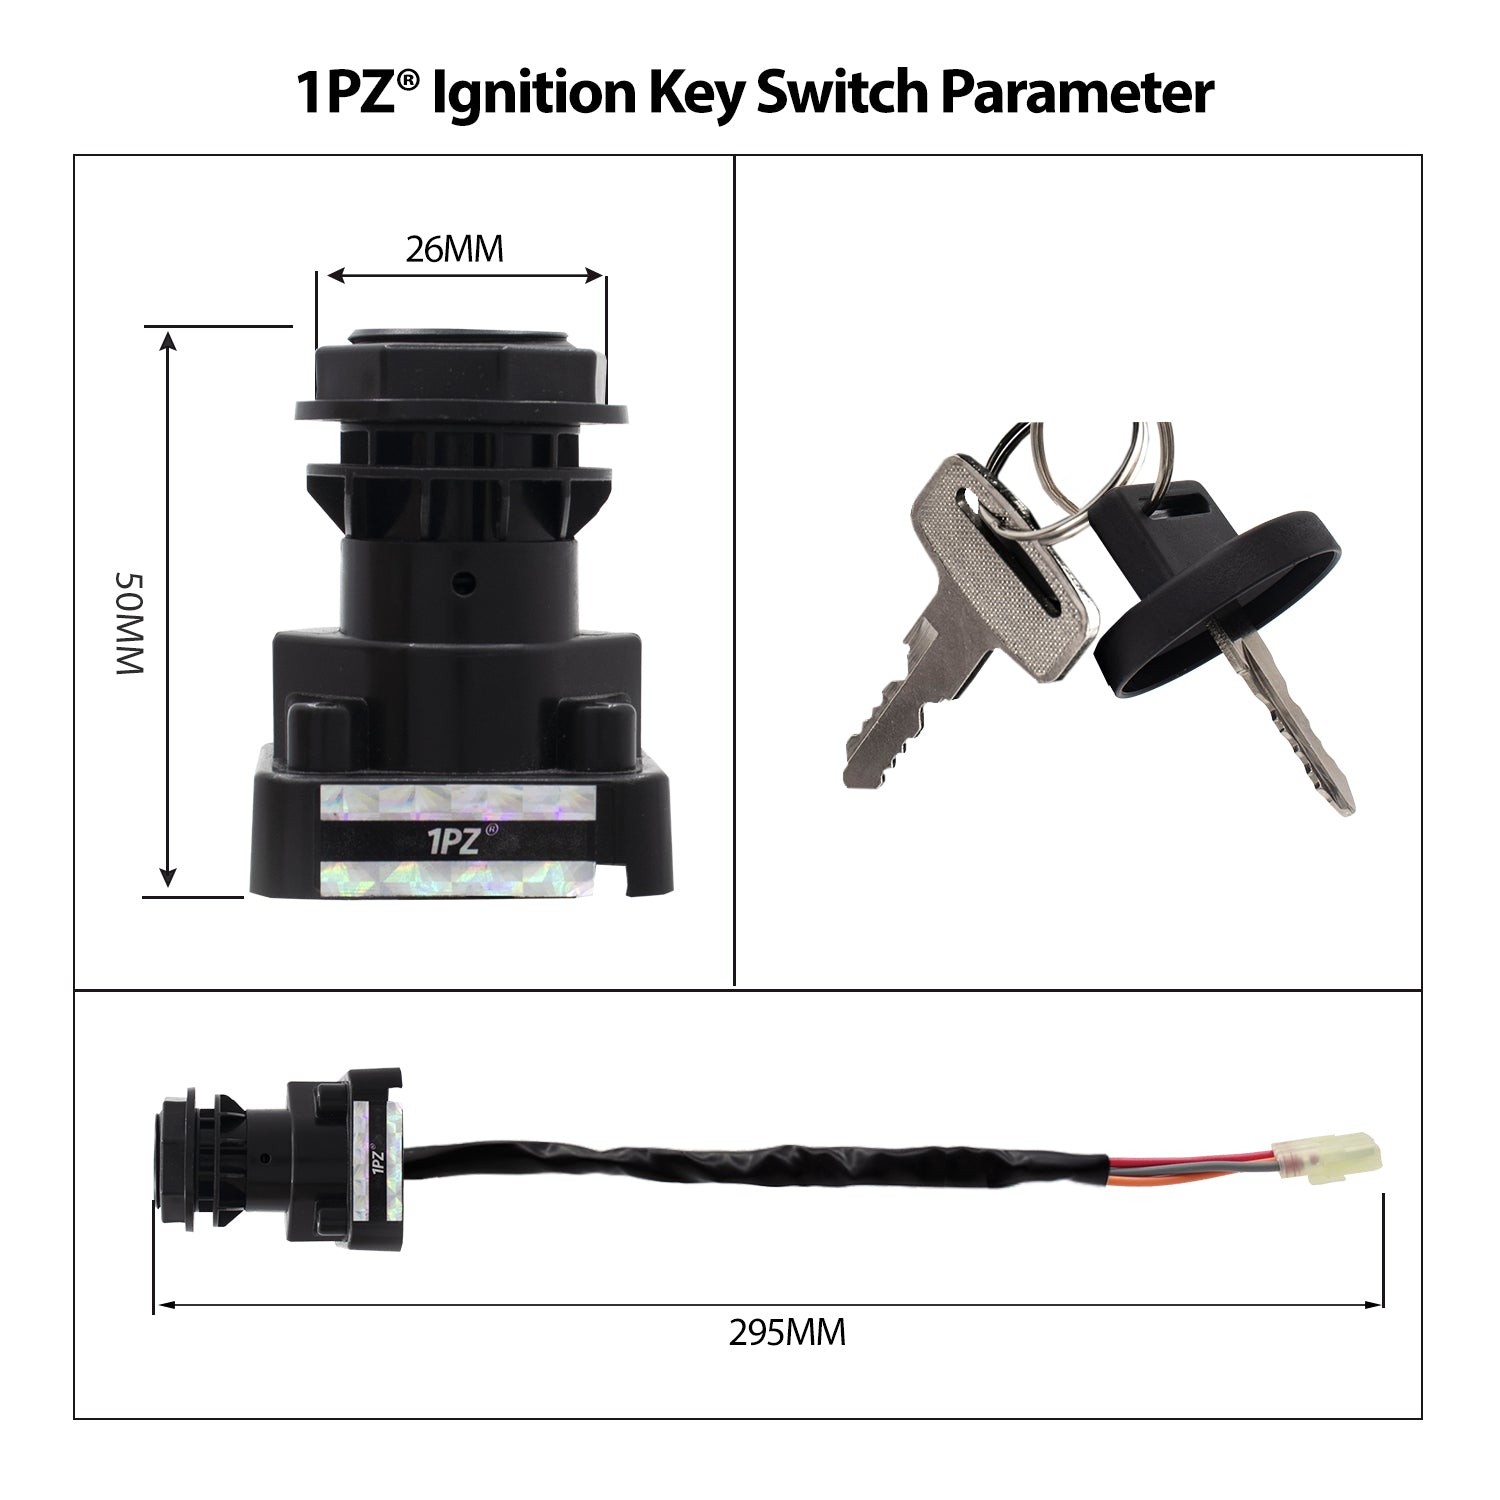 1PZ Ignition Key Switch for SUZUKI LT-Z400 Quadsport LTZ400 LTZ400Z 2003-2007 / LTF500F 1998-2002 / LTA500F 2000-2001 / LTZ250 QUADSPORT 2004-2009 /LTZ250 OZARK 2002-2009